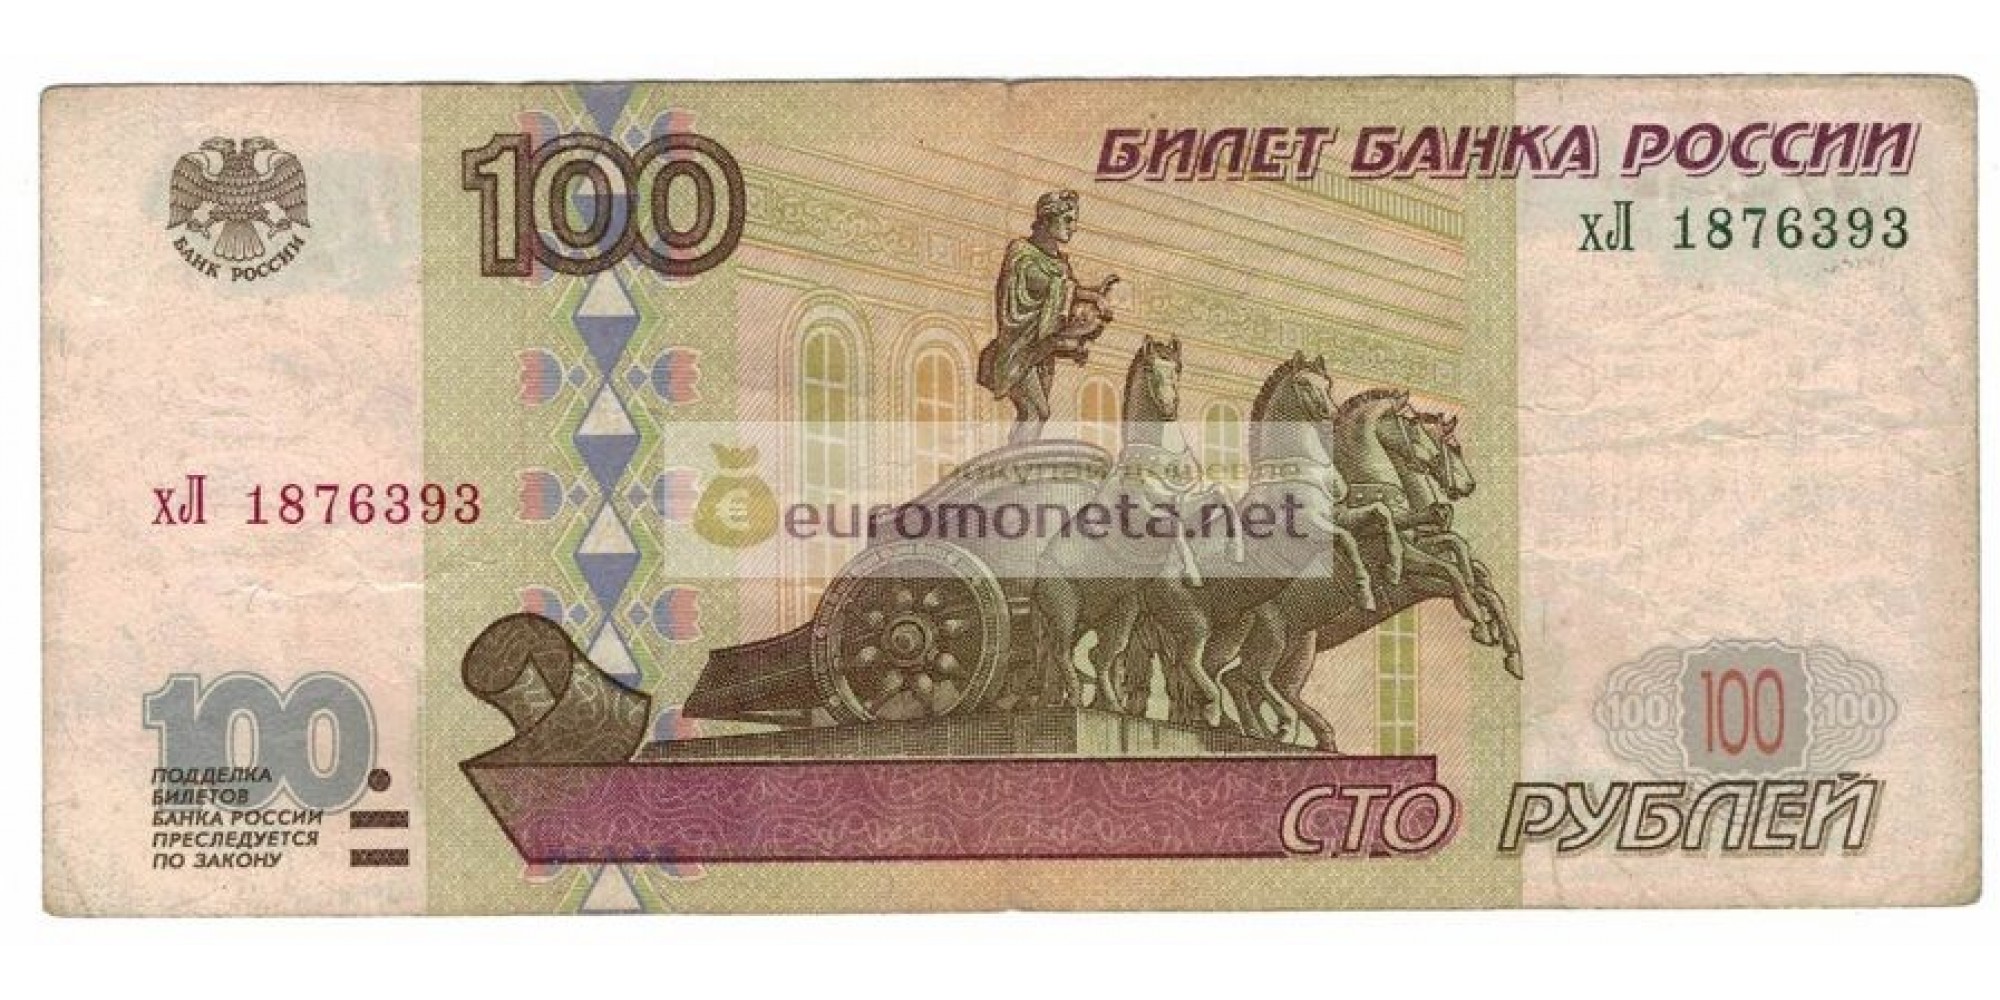 Россия 100 рублей 1997 год модификация 2001 год серия хЛ 1876393